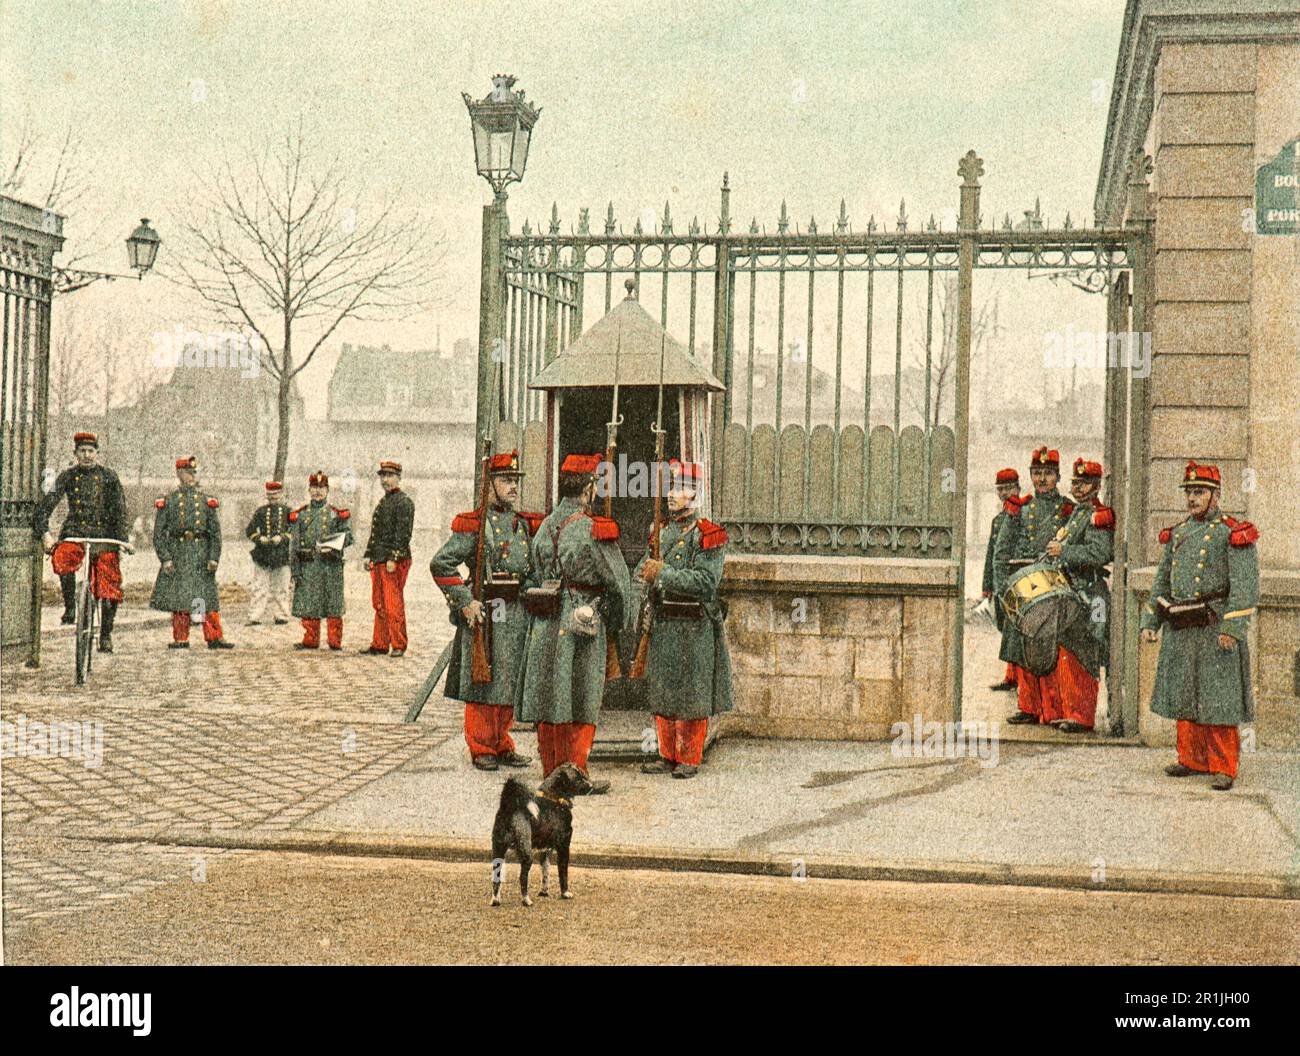 Images prises de la vie d'un soldat, un album militaire français datant de 1890, intitulé « l'Album militaire » Banque D'Images